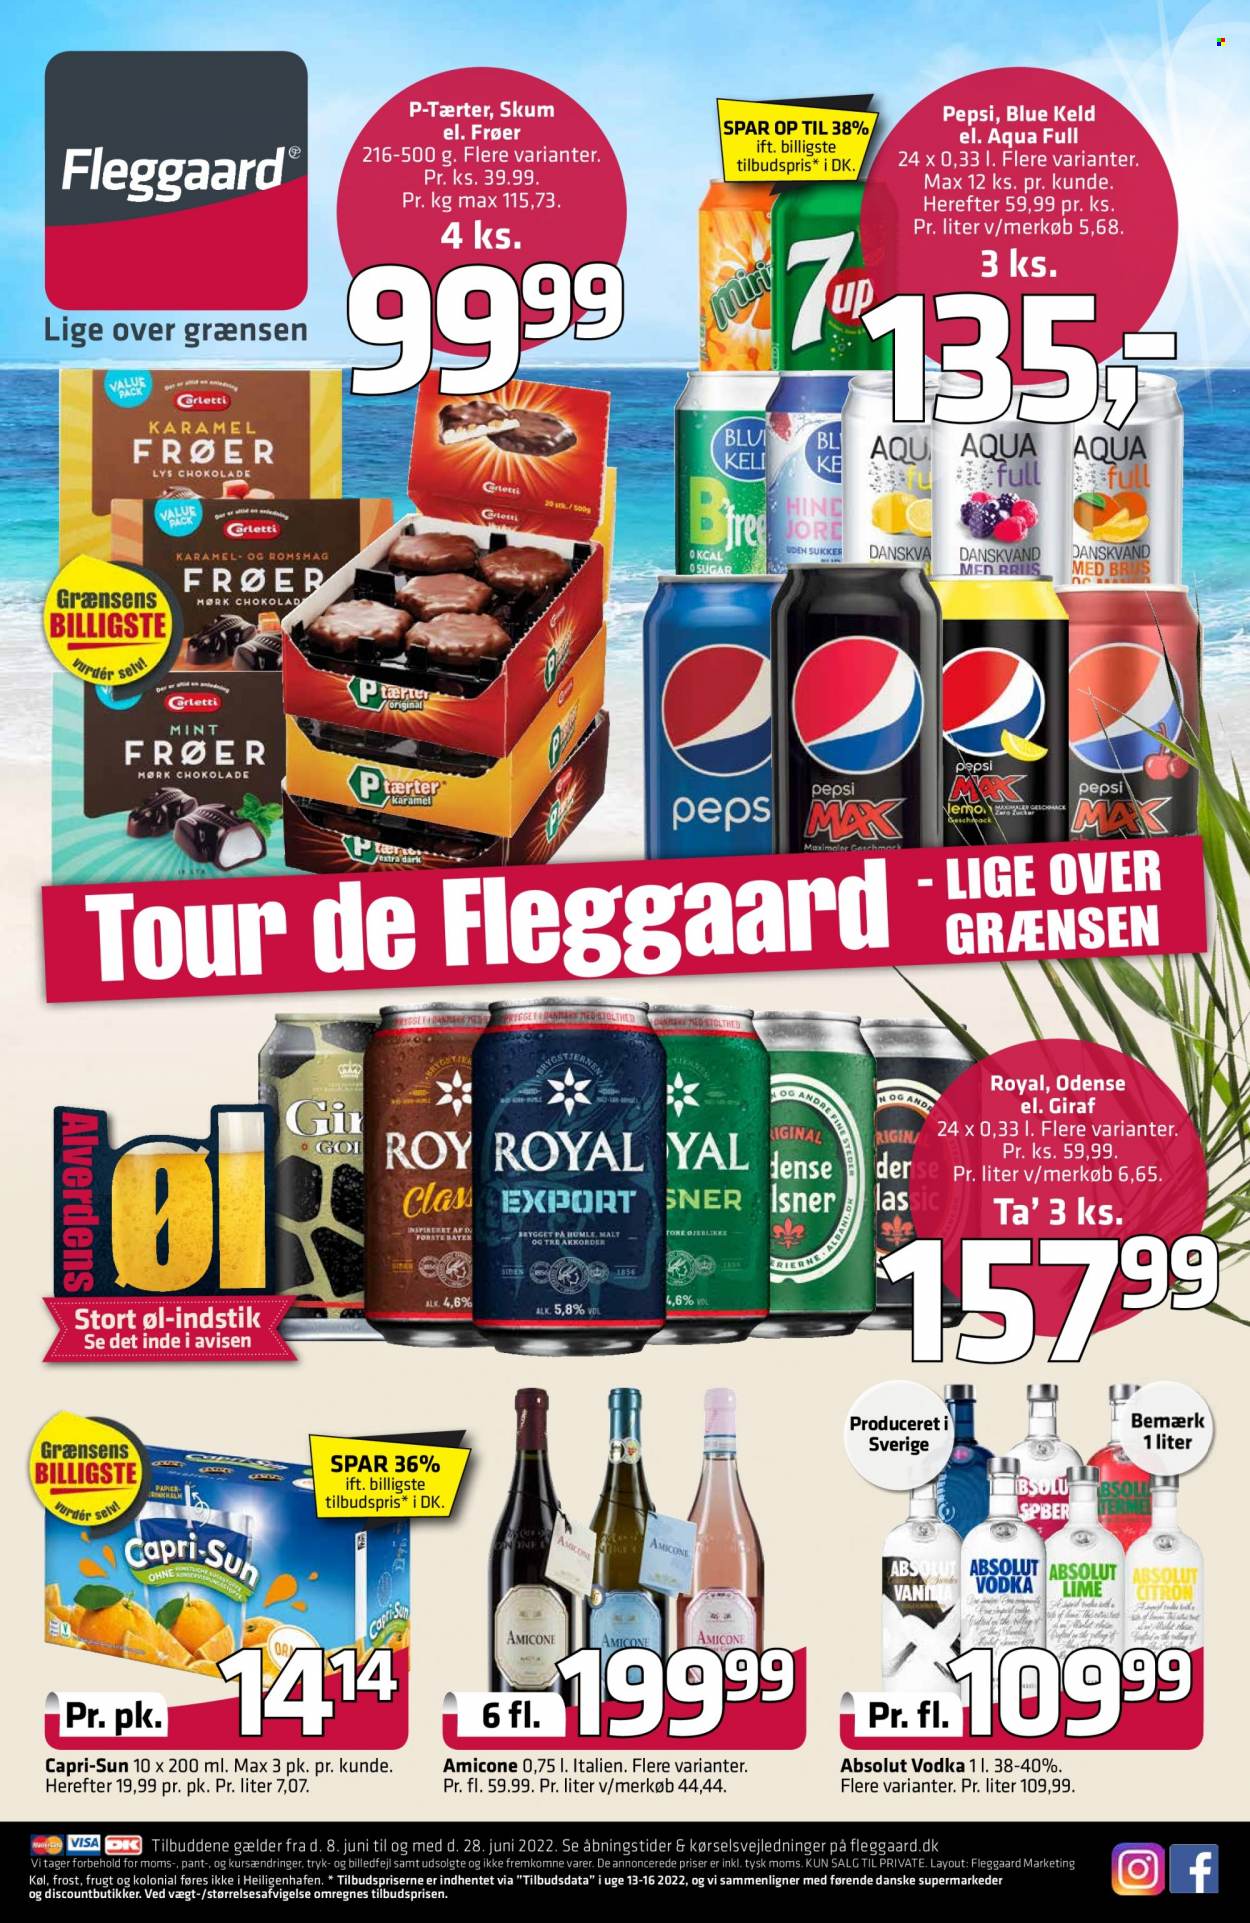 thumbnail - Fleggaard tilbud  - 8.6.2022 - 28.6.2022 - tilbudsprodukter - øl, Blue Keld, Capri Sun, Pepsi, Absolut, vodka. Side 1.